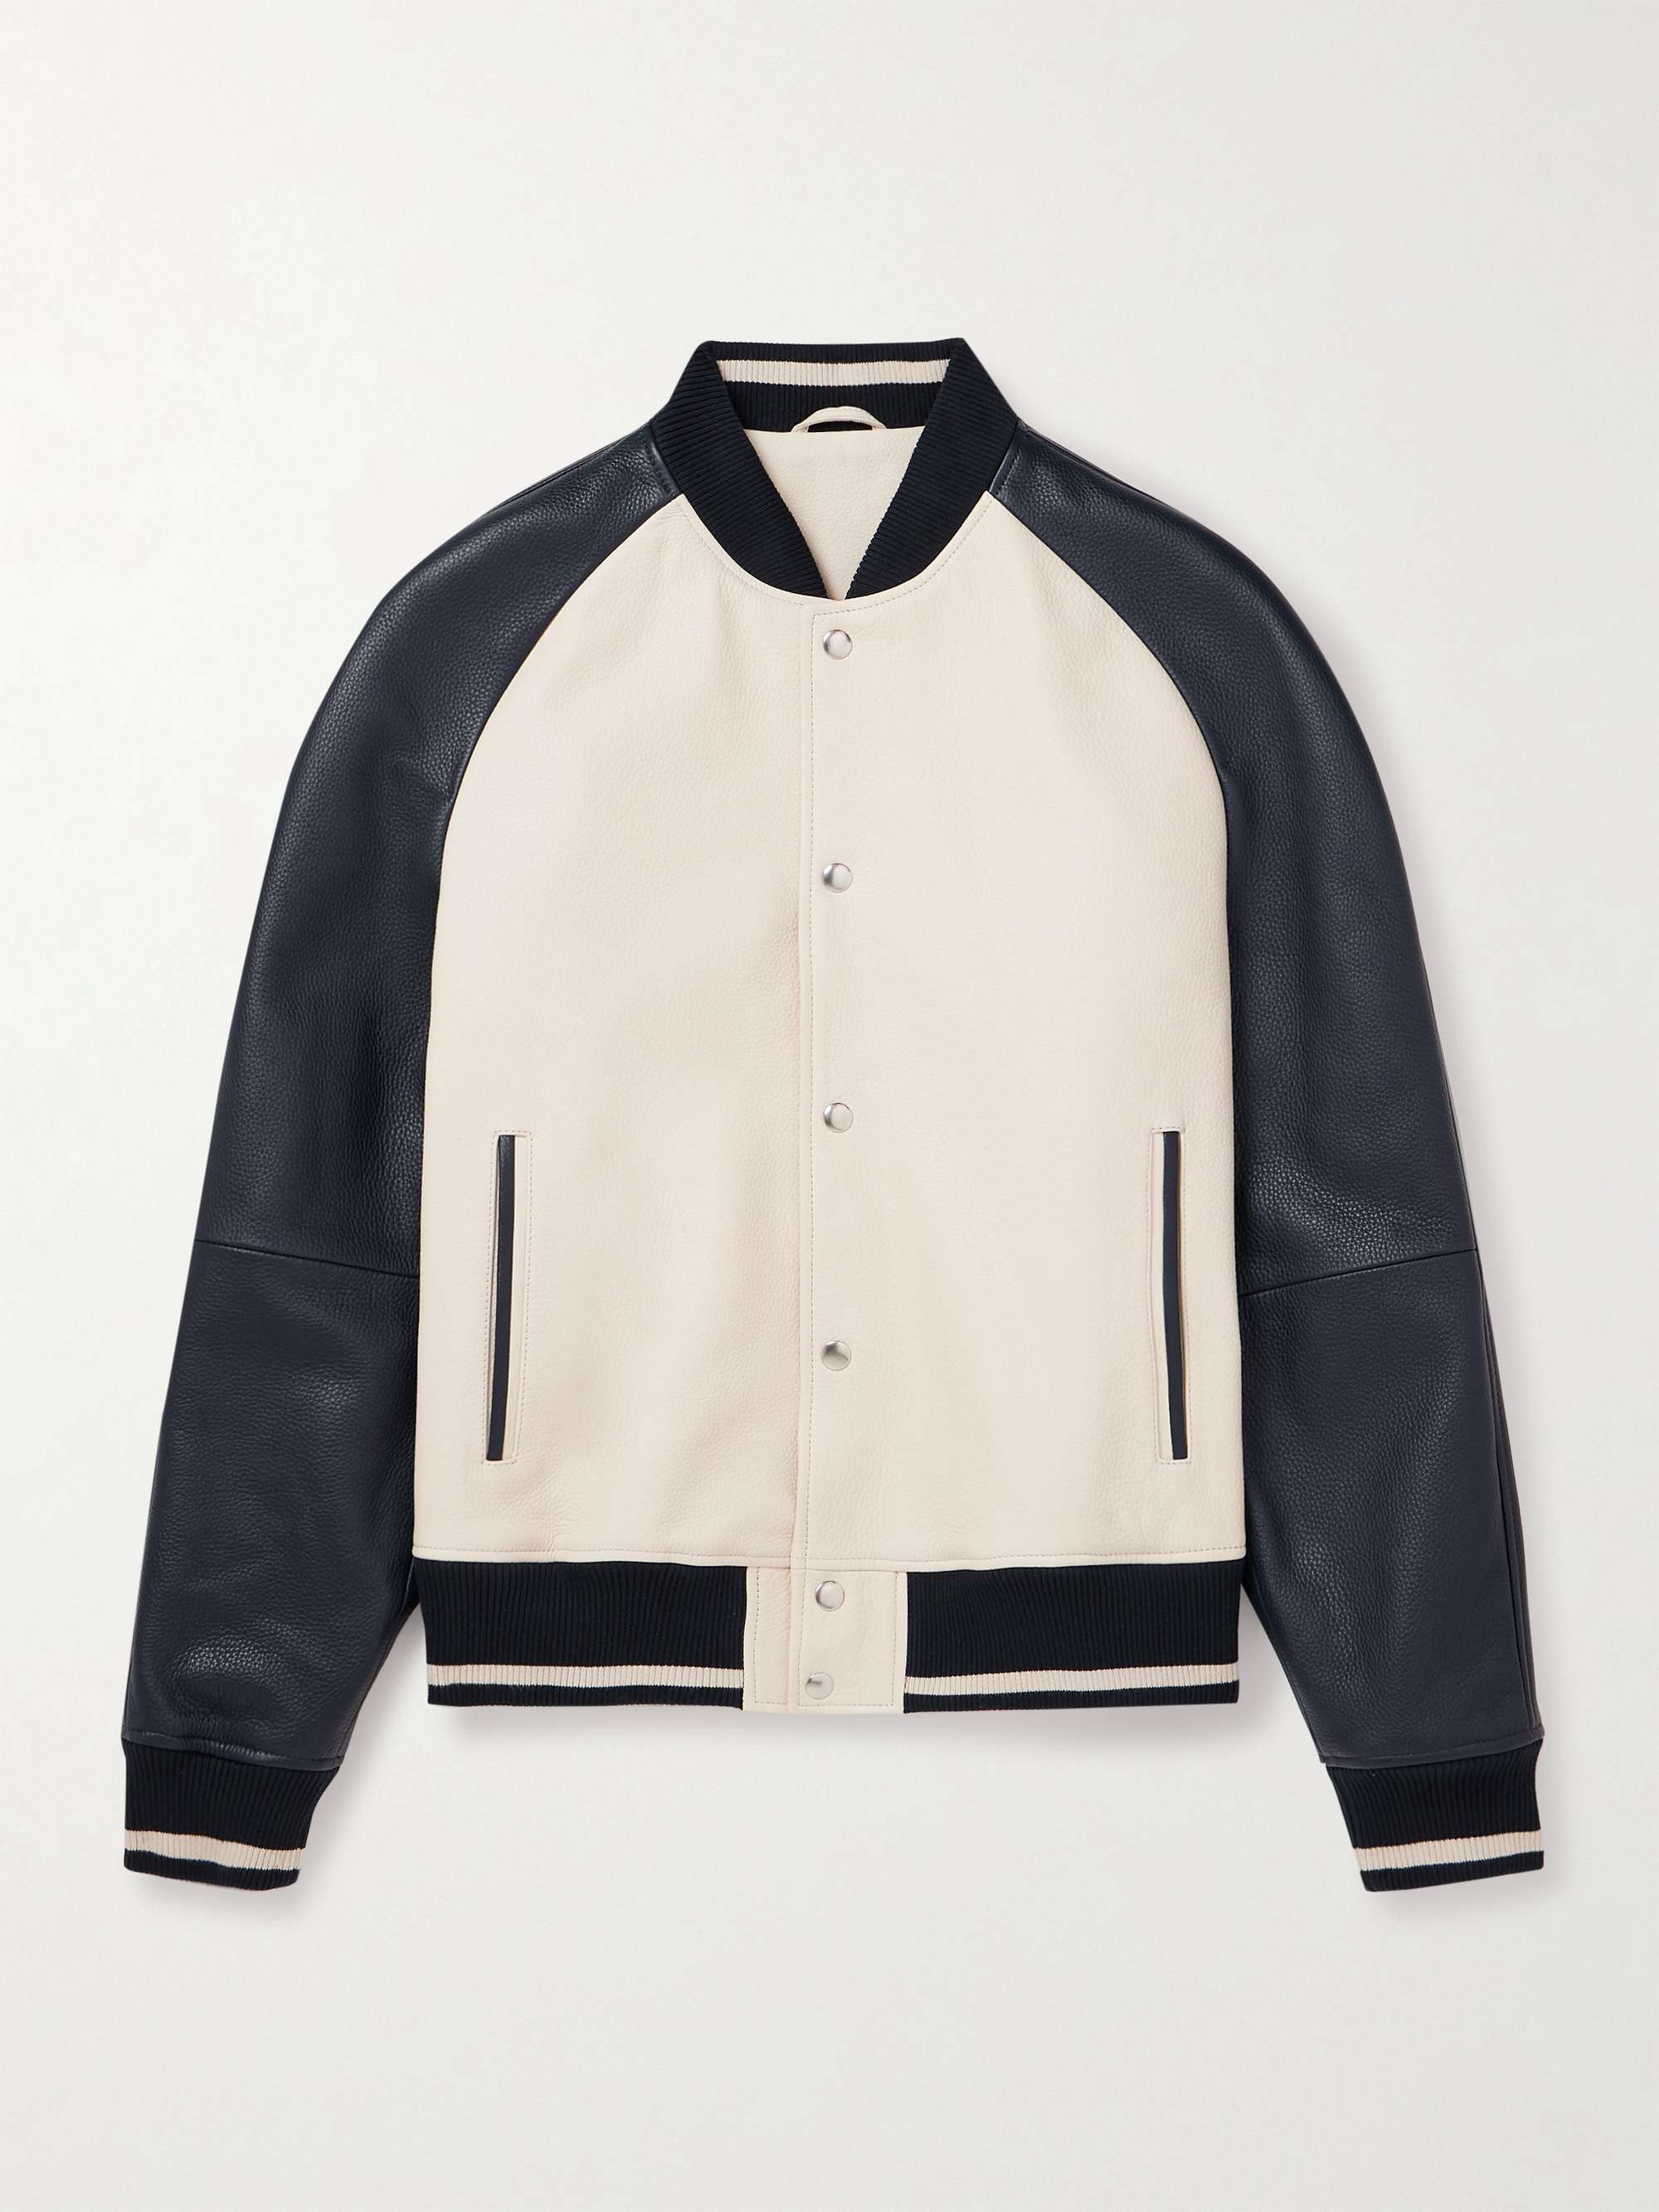 MR P. Full-Grain Leather Varsity Jacket for Men | MR PORTER